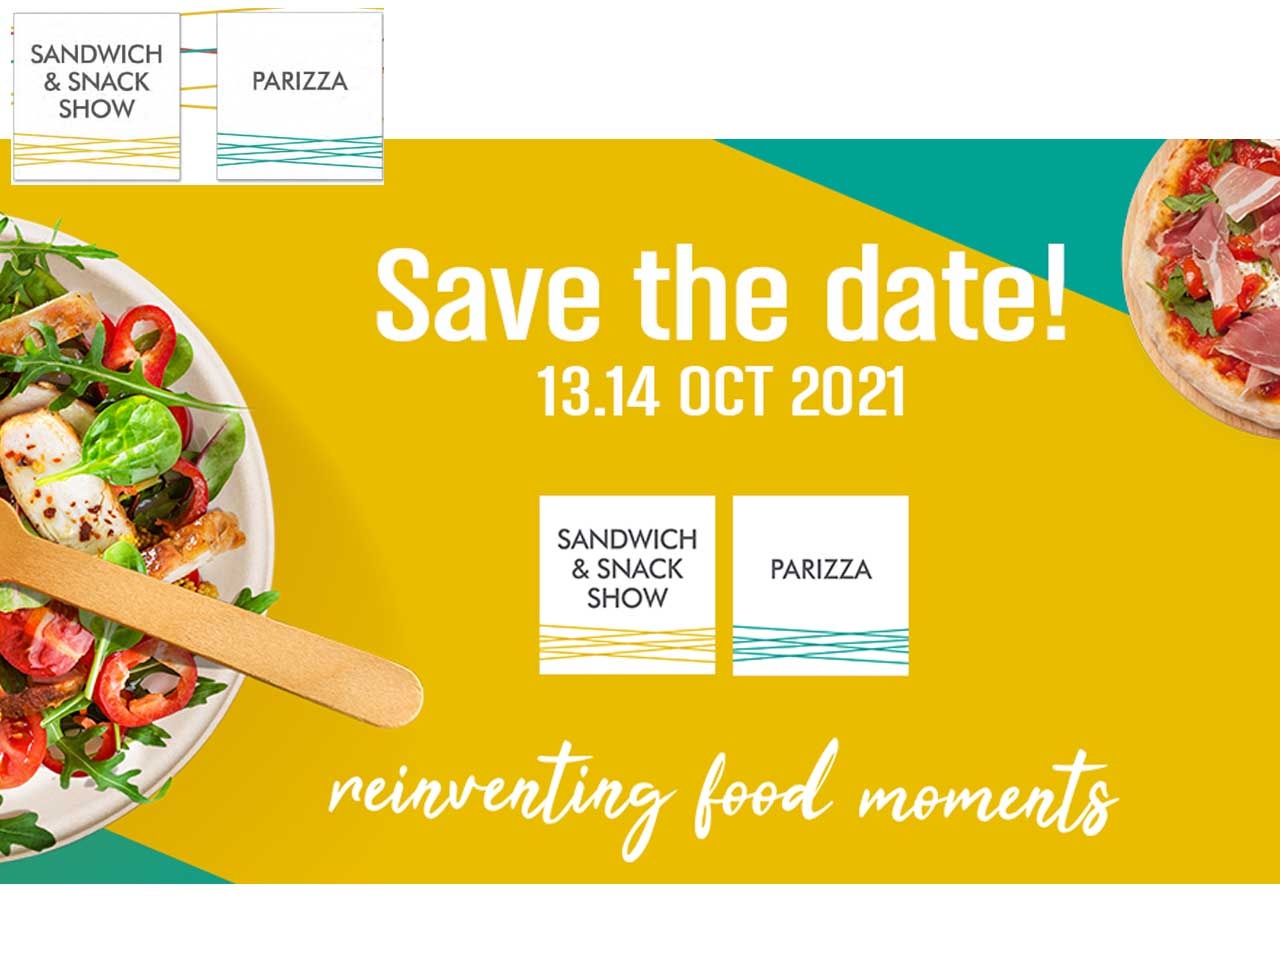 Les sandwich & snack show, Parizza et Japan Food sont reportés fin 2021 !